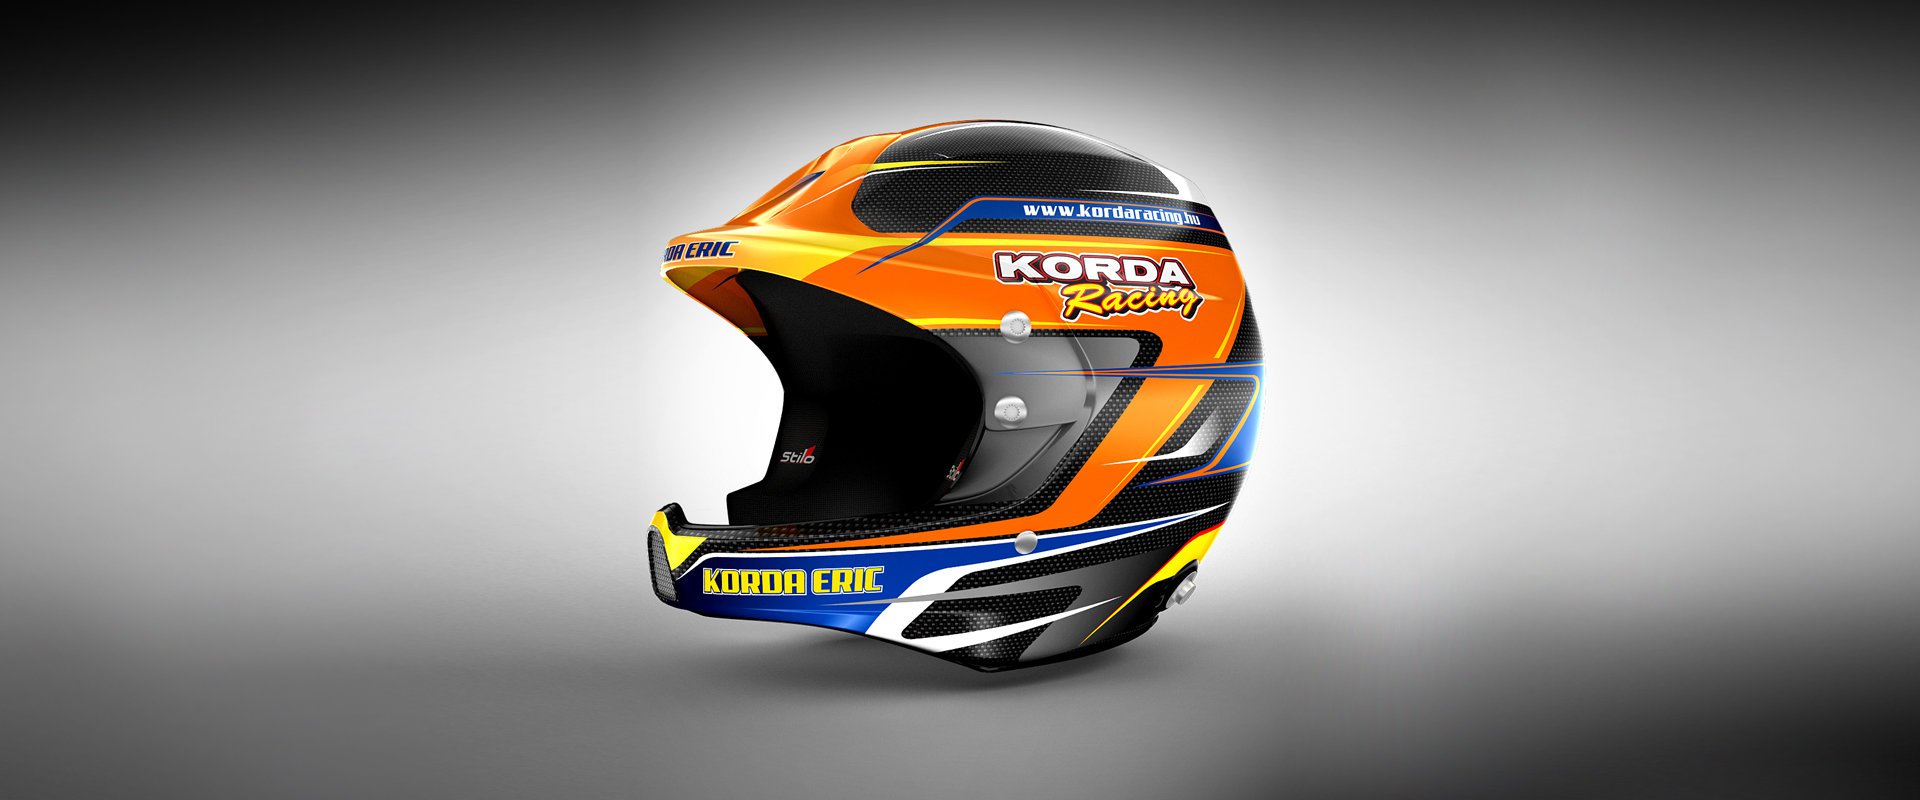 Korda Racing #1